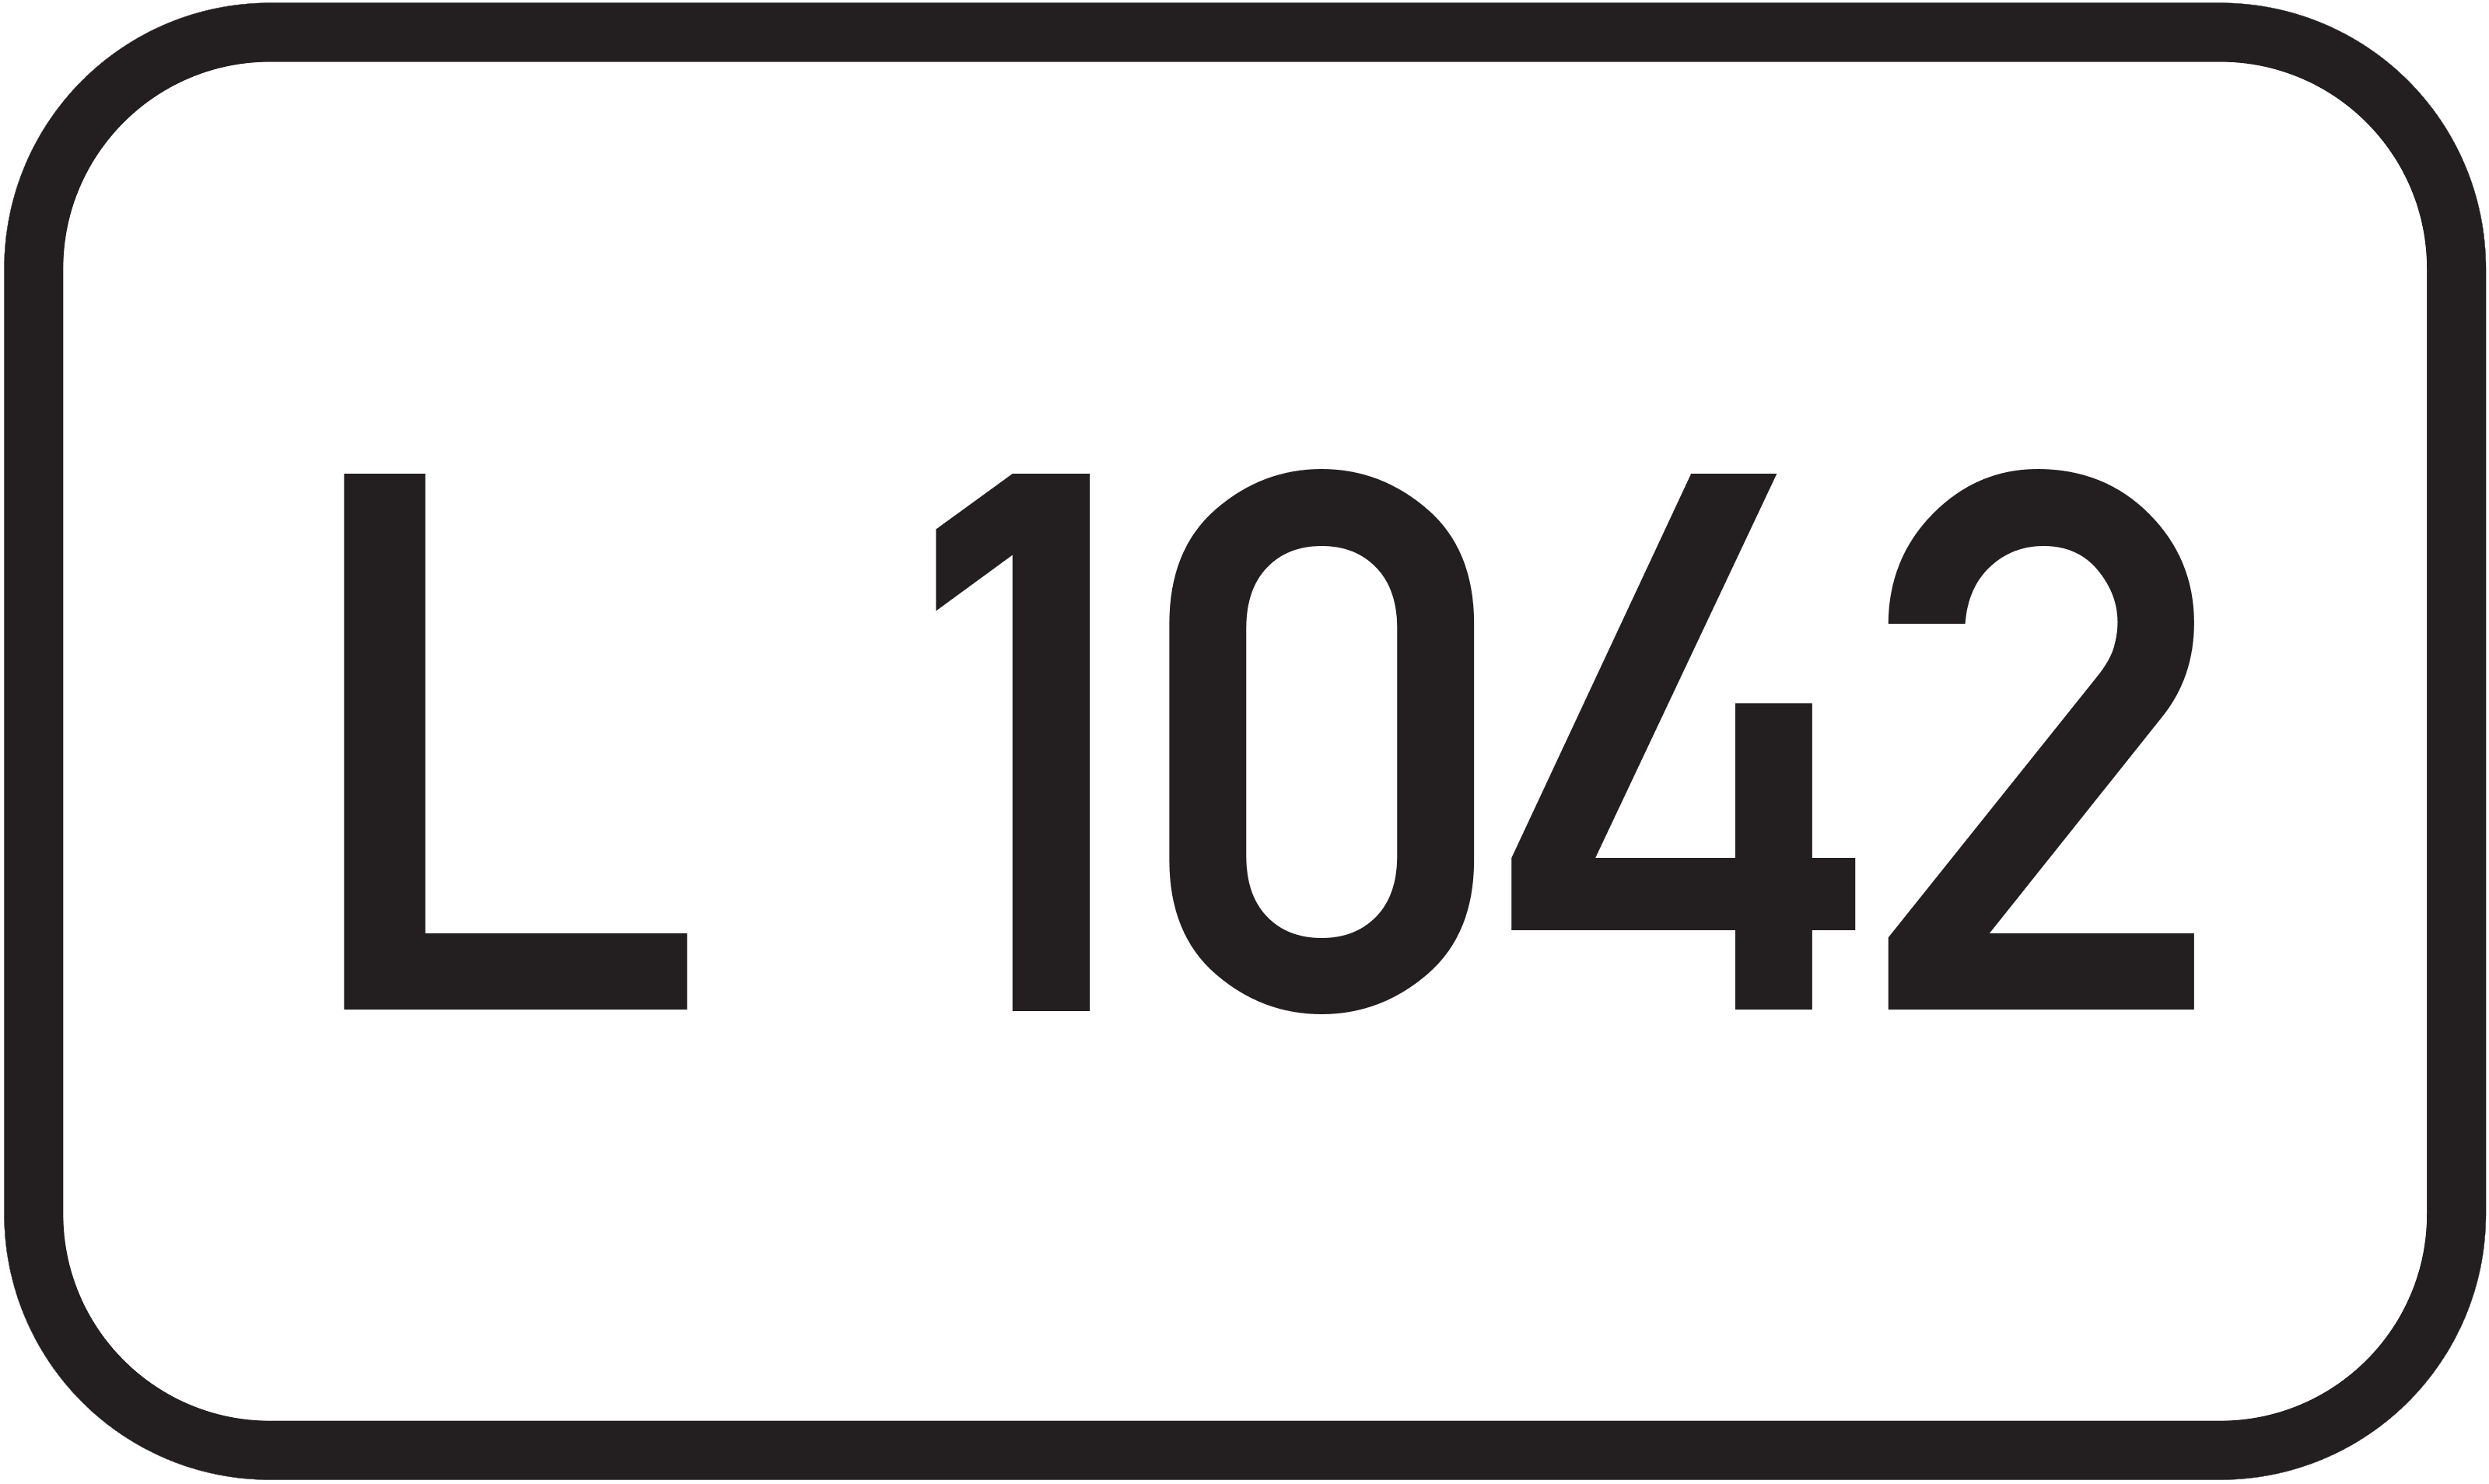 Landesstraße L 1042